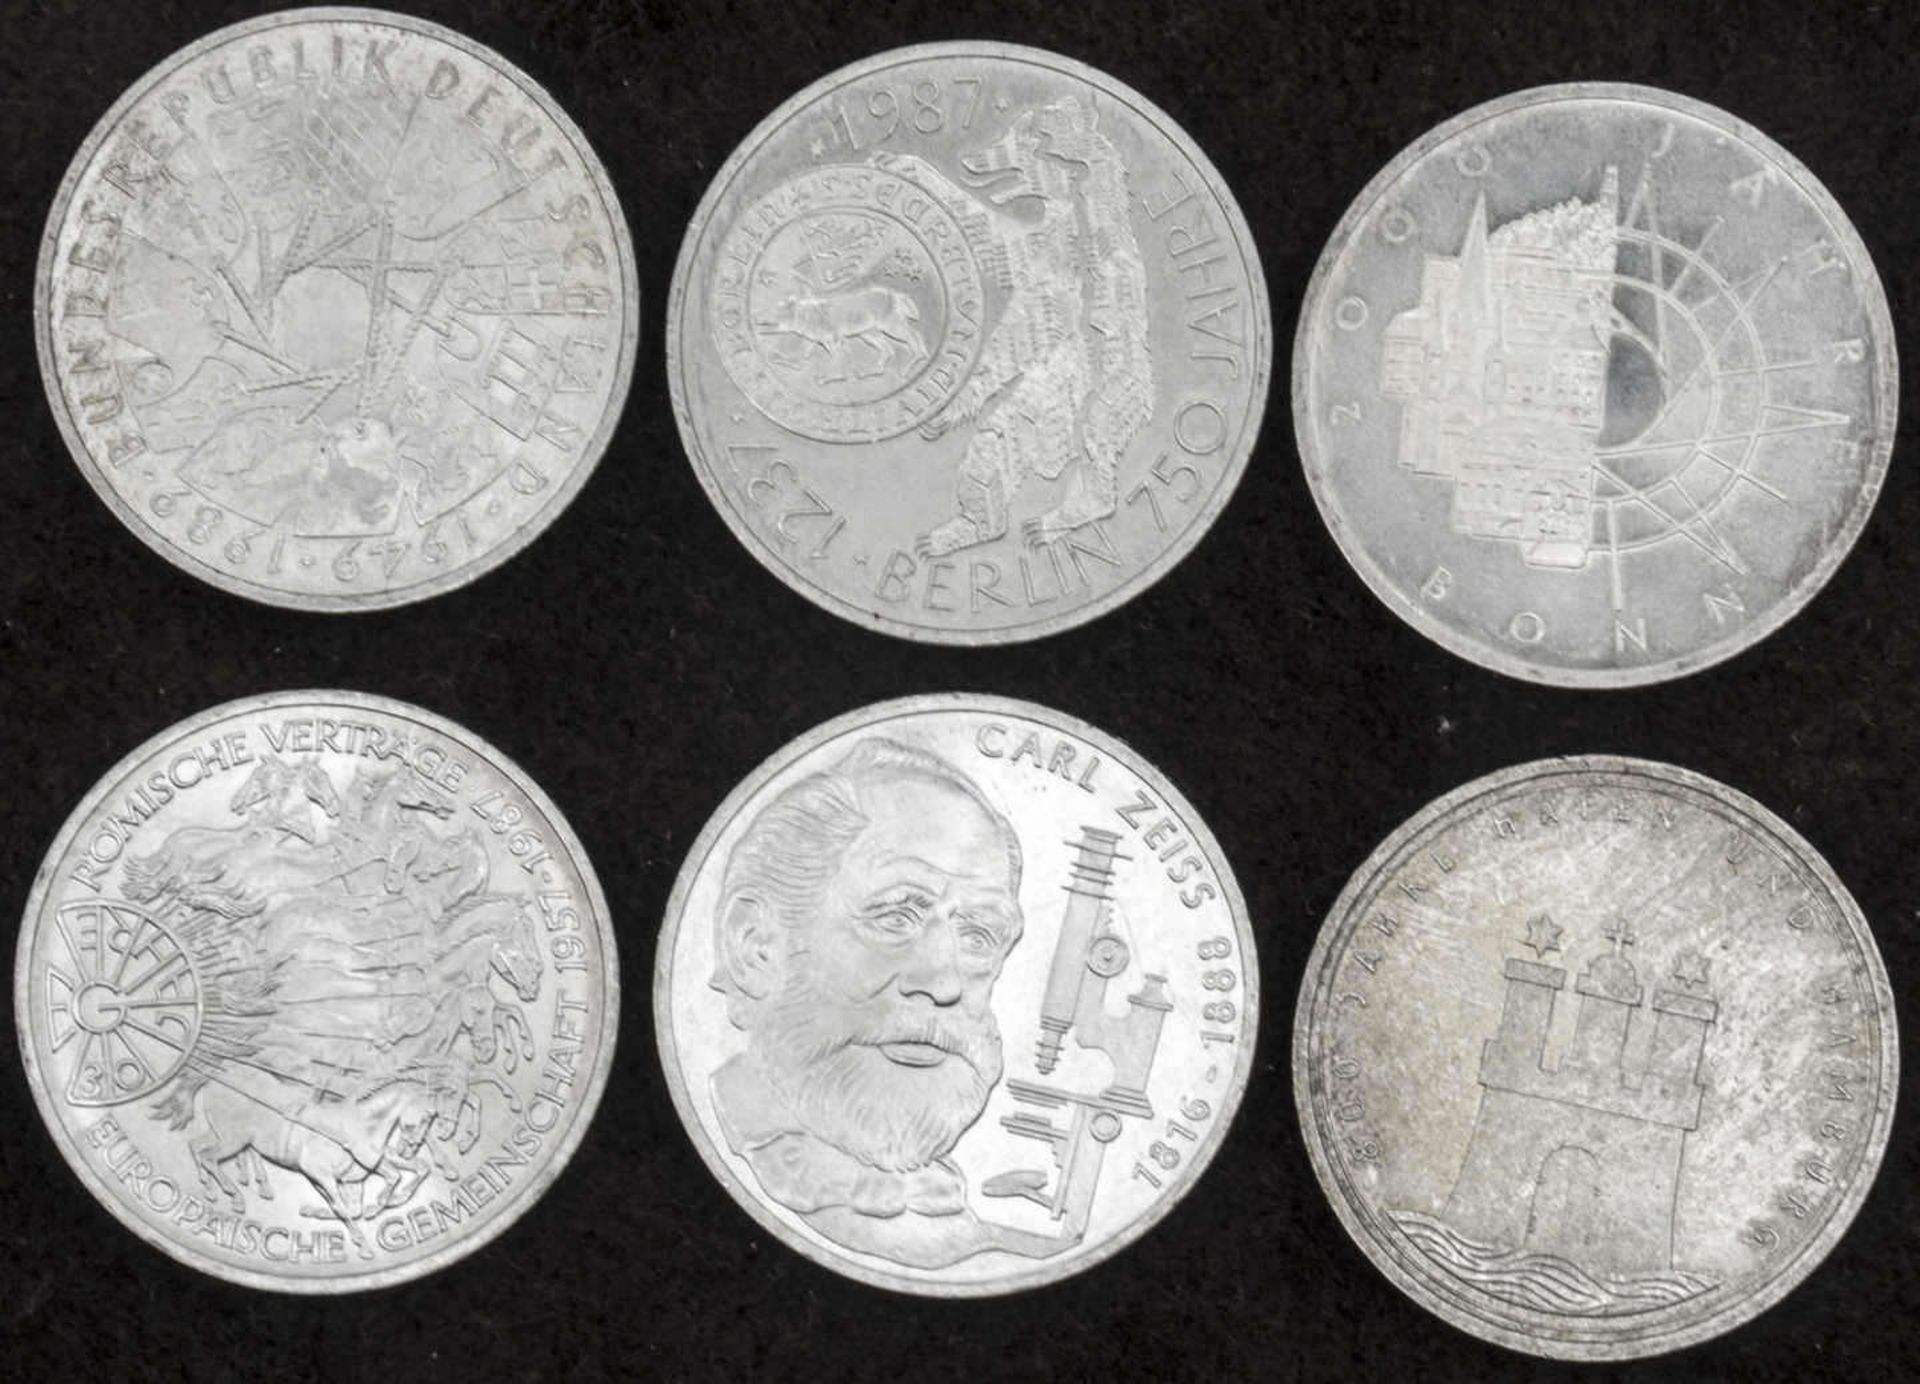 BRD 1988/89 D, 6 x 10.- DM - Silbermünzen. Stgl. FRG 1988/89 D, 6 x 10 DM - silver coins. BU.